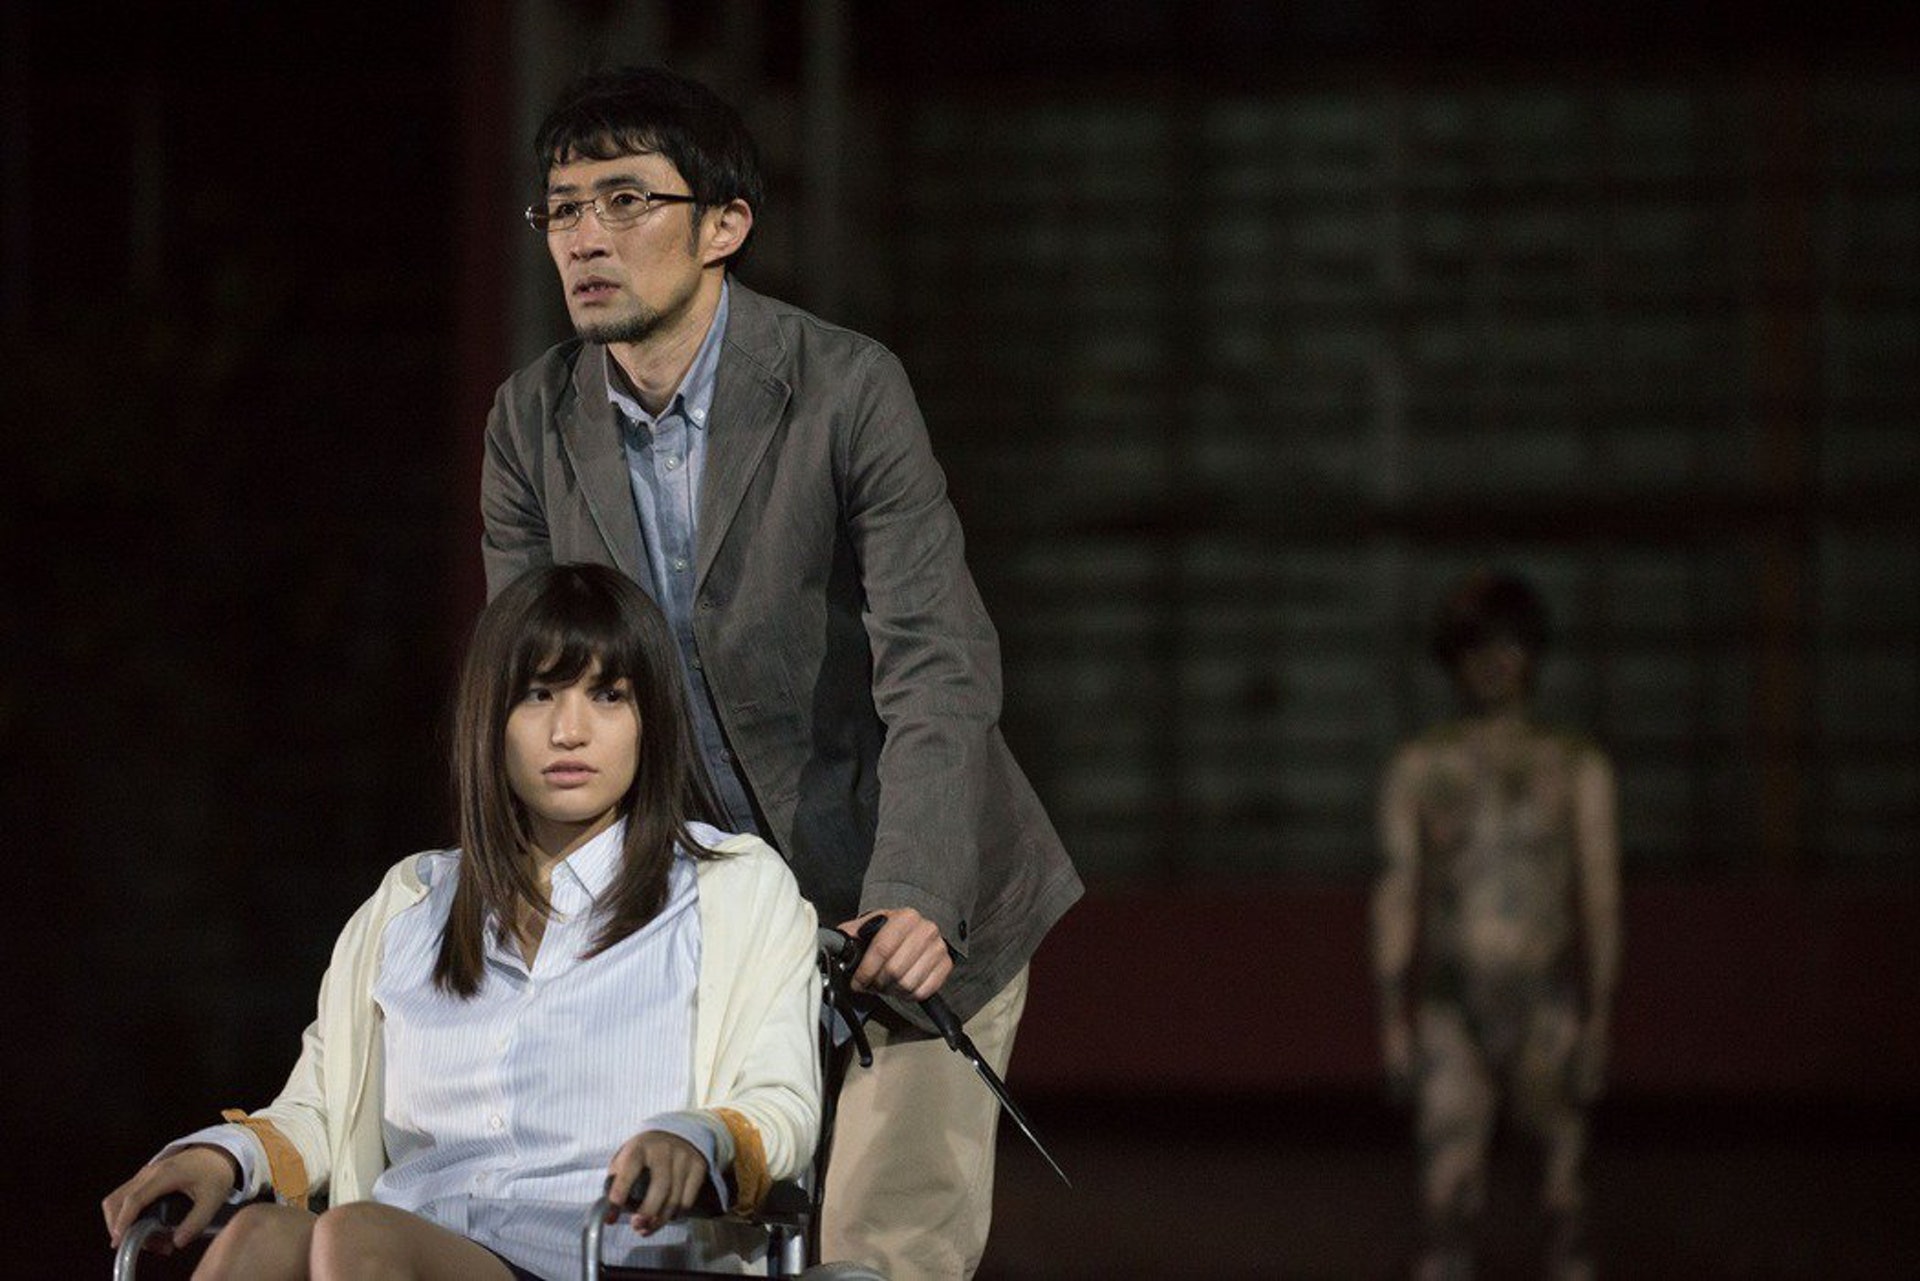 ข่าวสารAV-Shoko Takahashi กับหนังซอมบี้สุดระทึกที่นักแสดงเองก็ยังงง